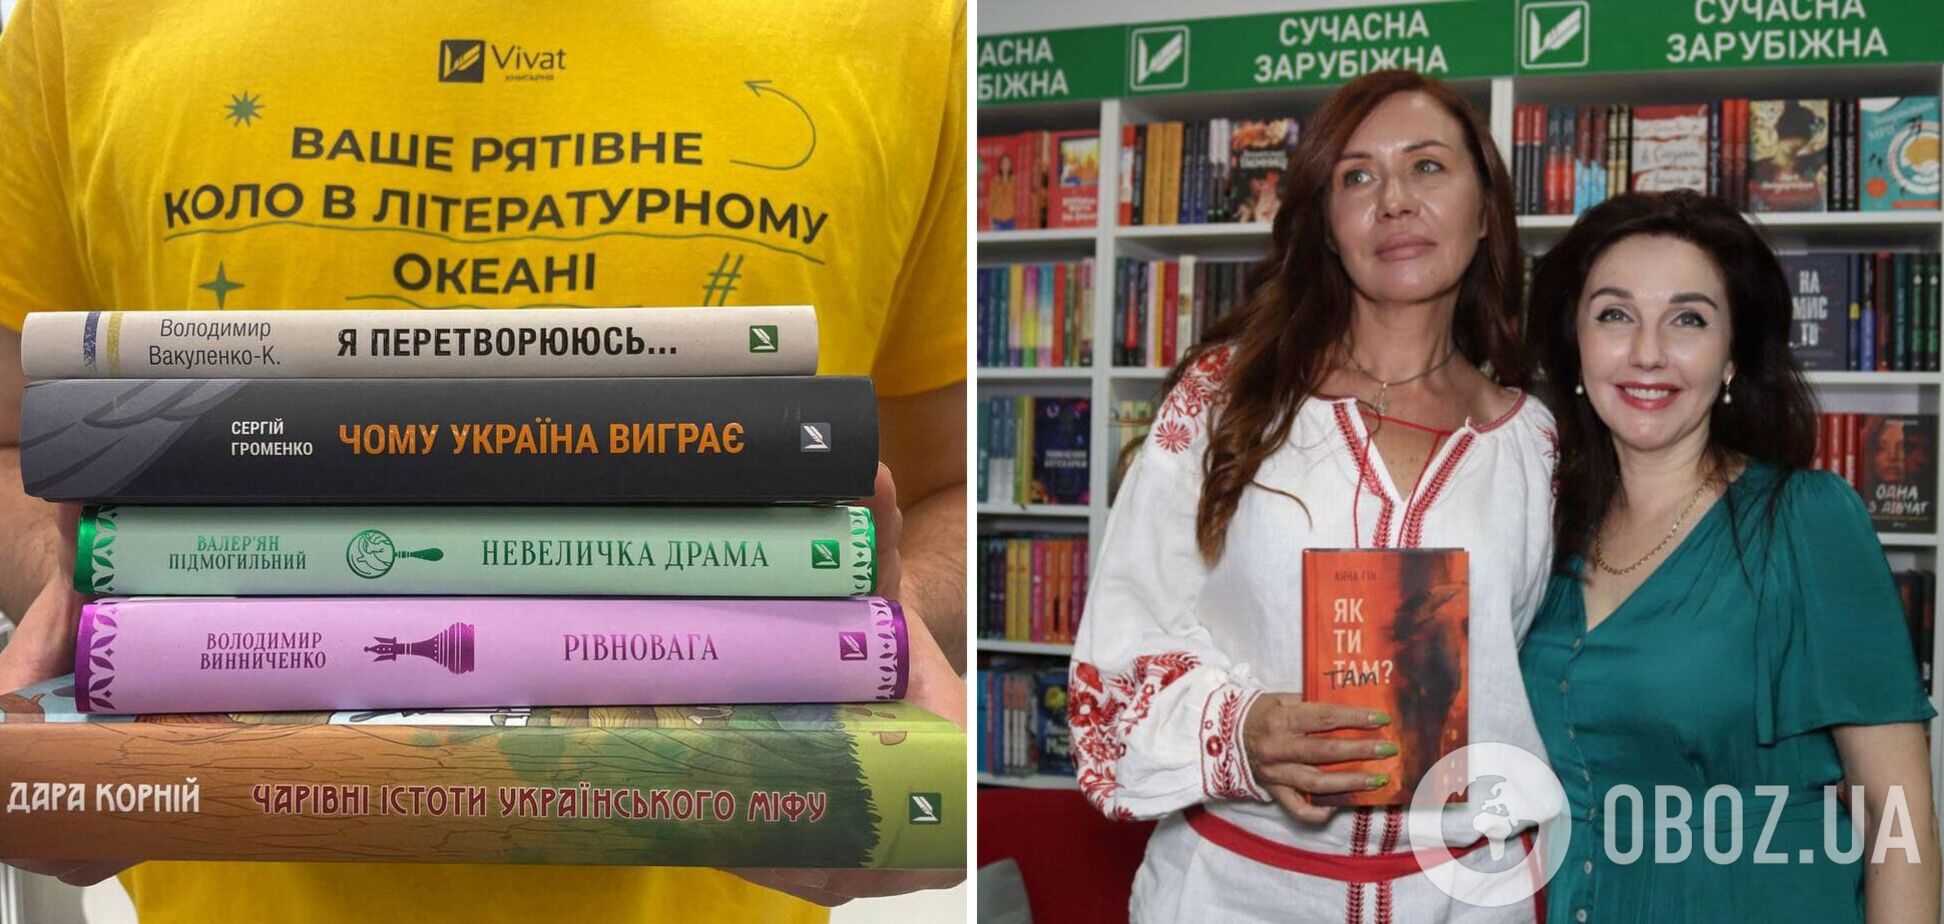 Ренесанс української книжки: нові сенси і тренд на відкриття книгарень